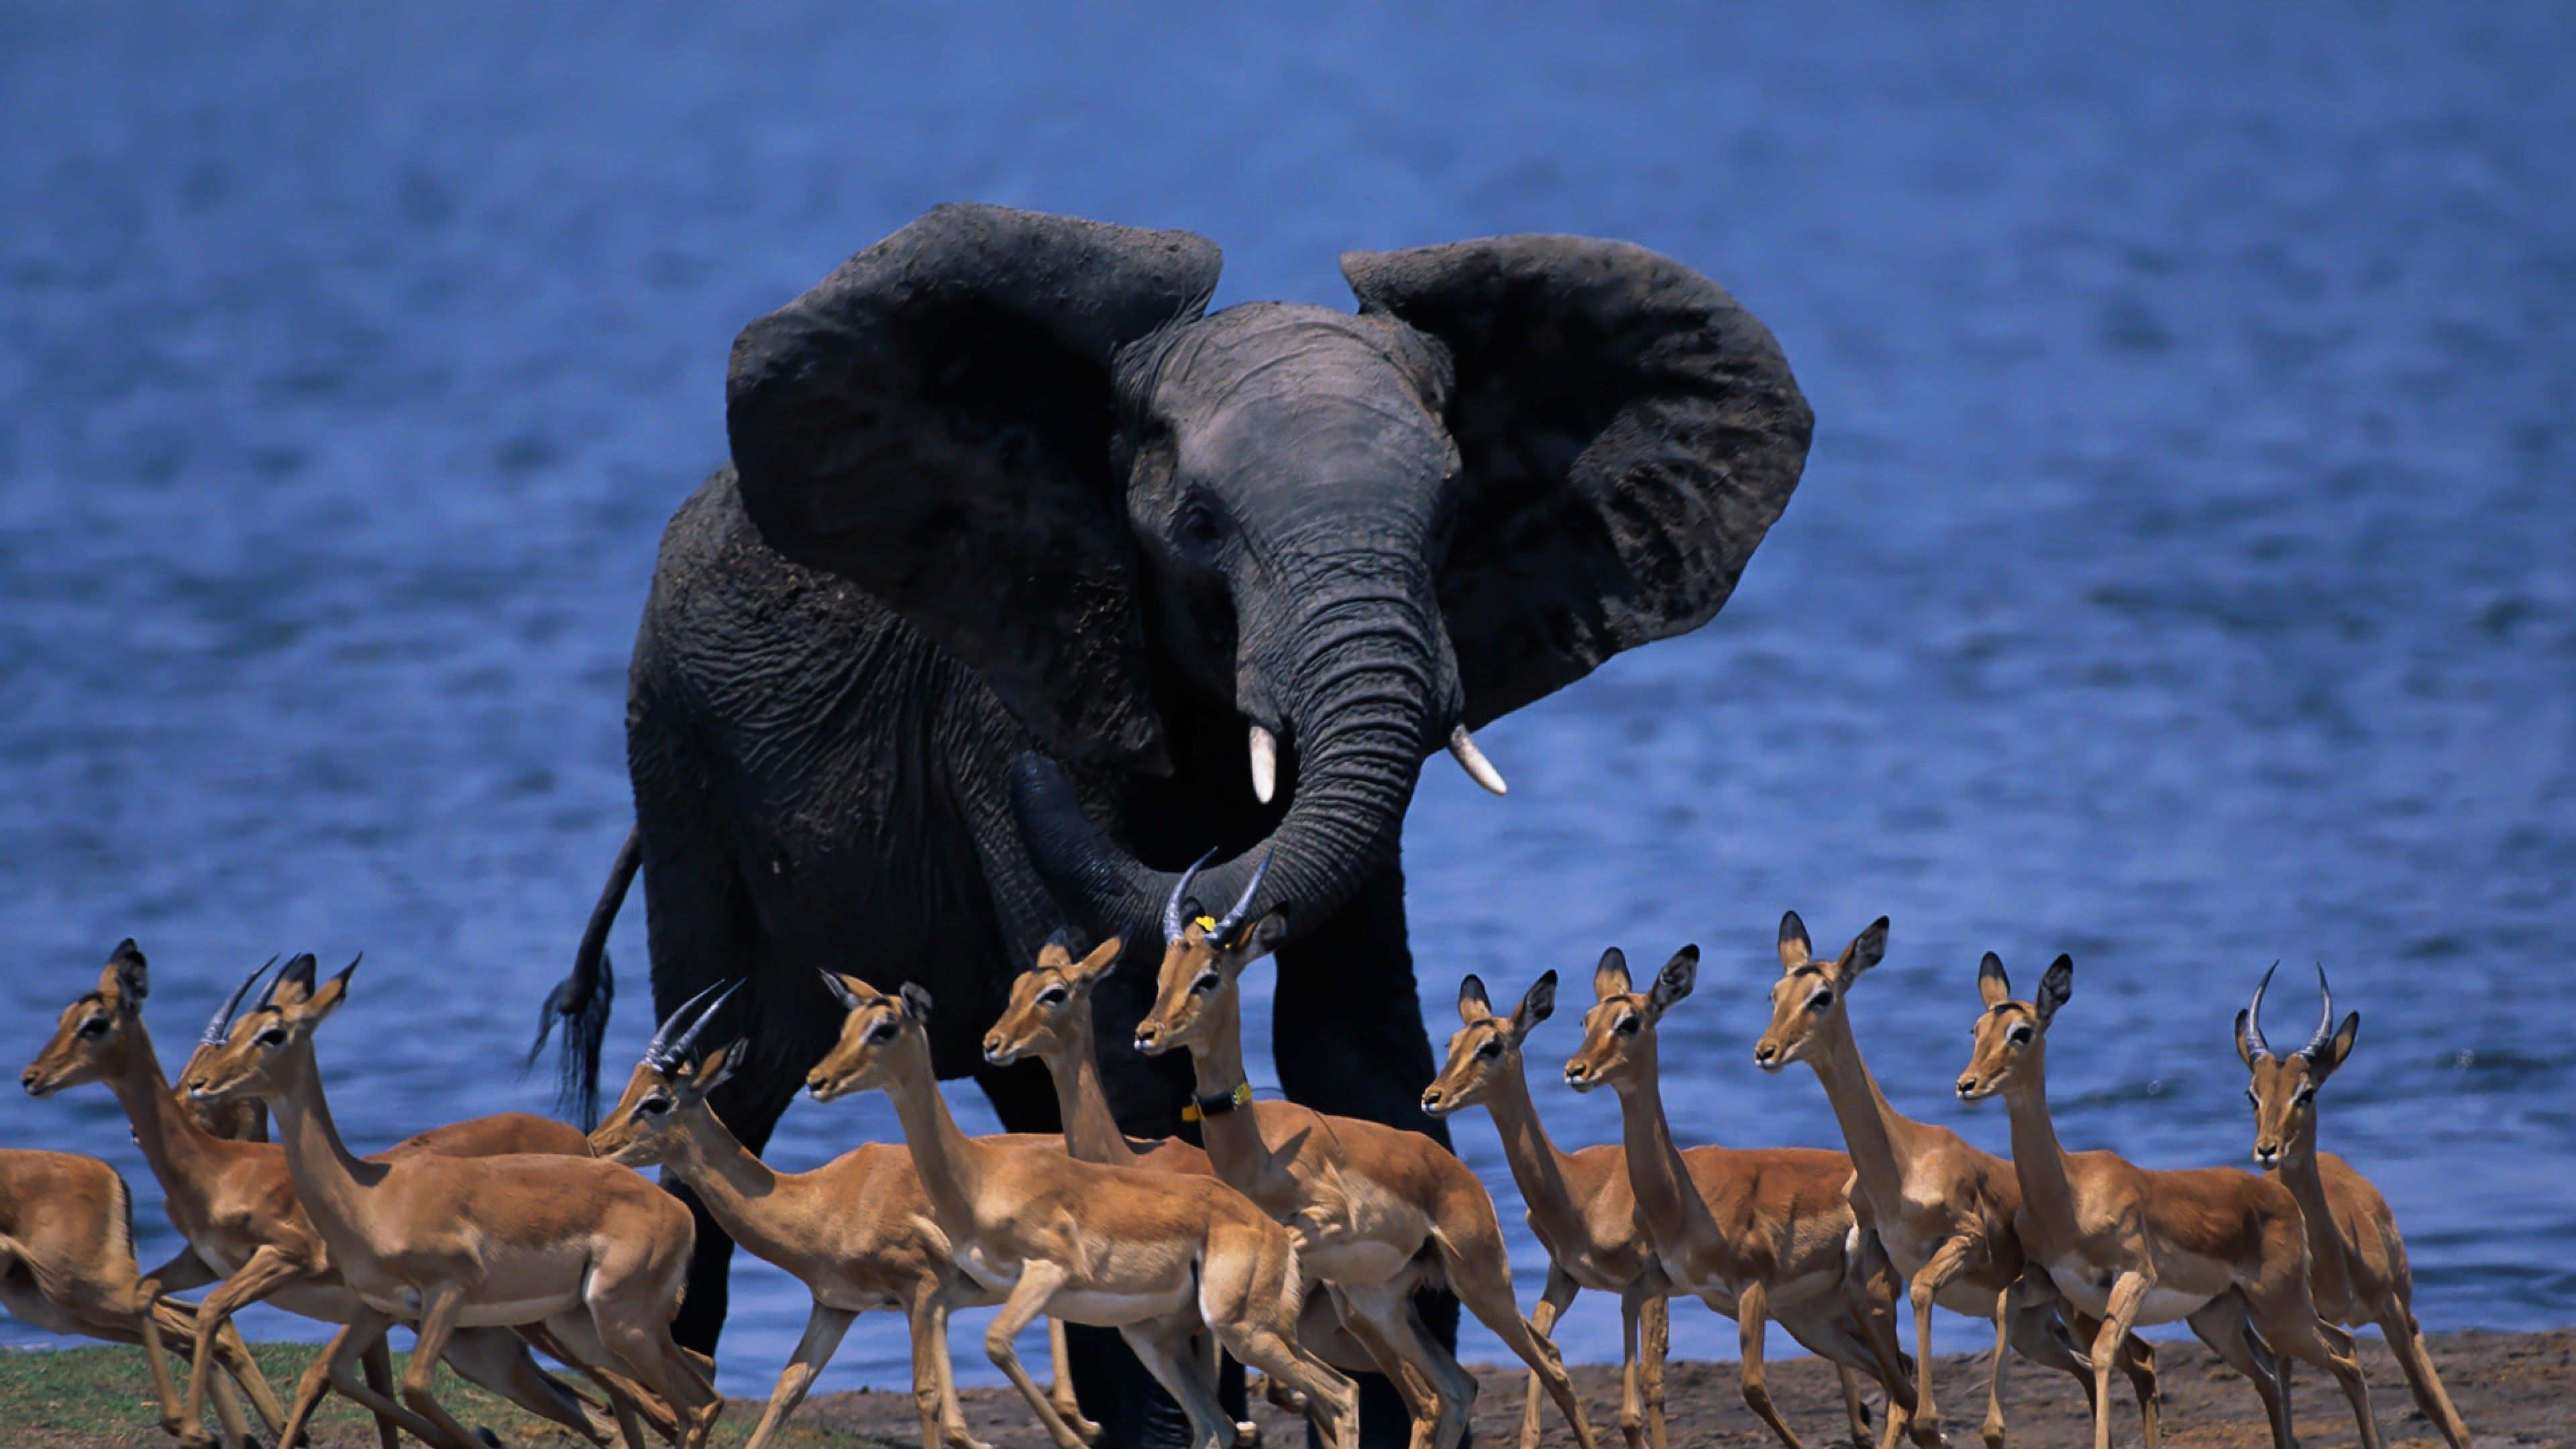 Download Wallpaper 3840x2160 Wildlife africa, Elephant, Duiker